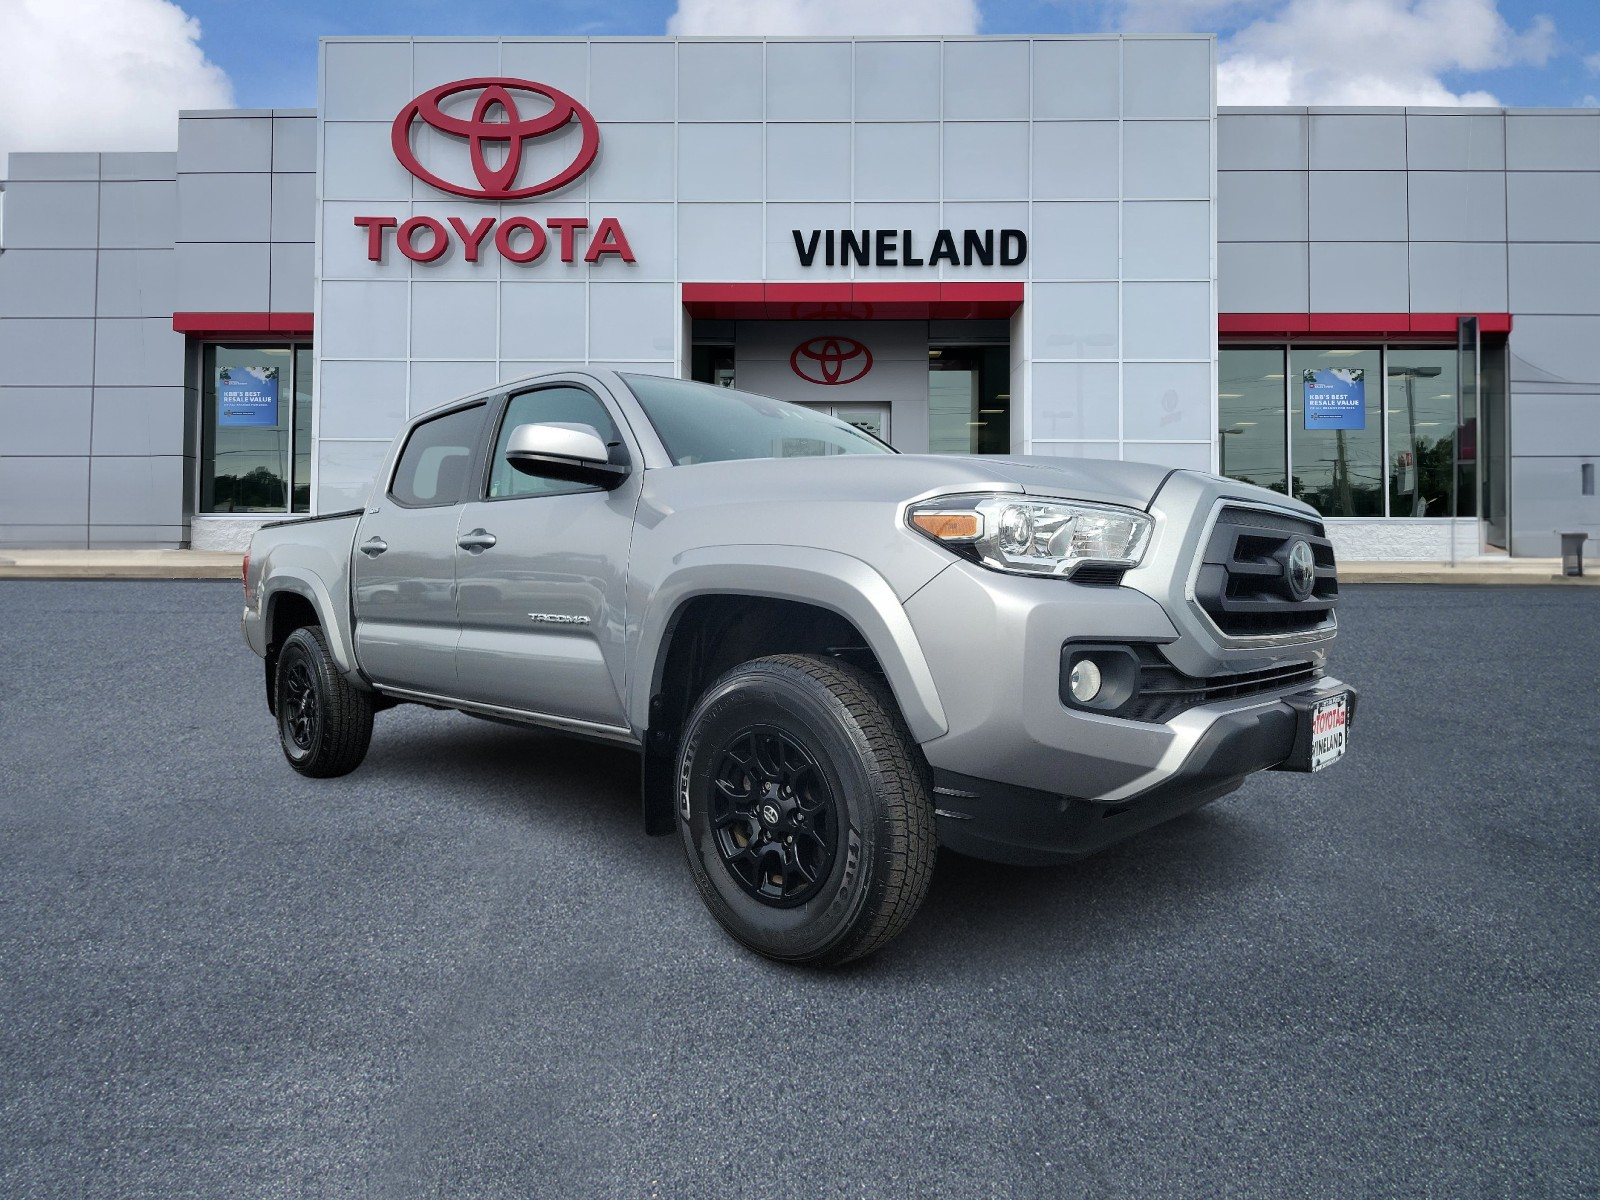 2021 Toyota Tacoma Vineland NJ